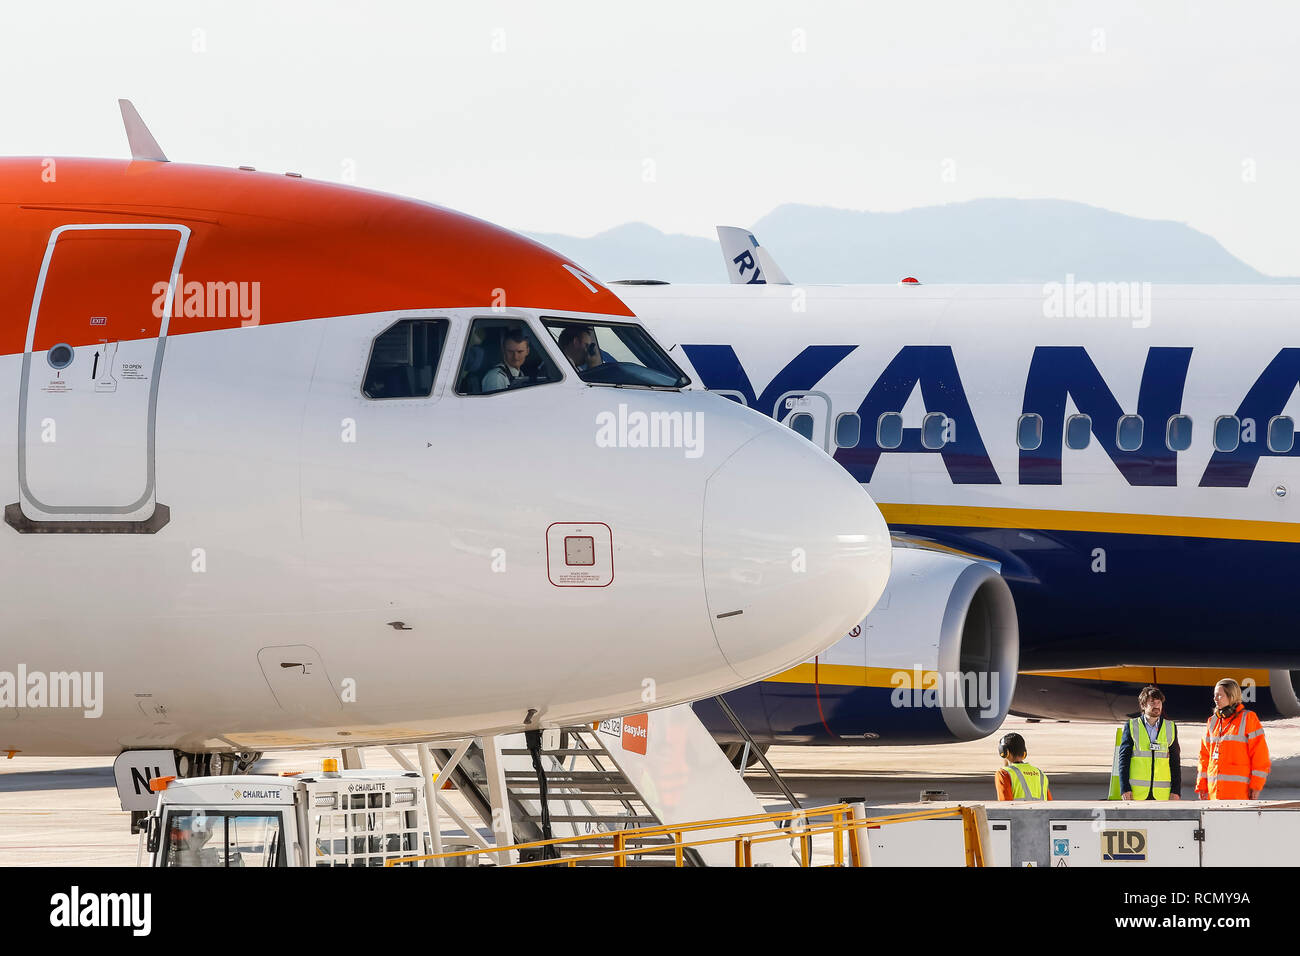 Murcia, Espagne. 15 janvier, 2019. L'ouverture et l'arrivée du premier vol de l'aéroport © ABEL F. ROS/Alamy Live News Banque D'Images